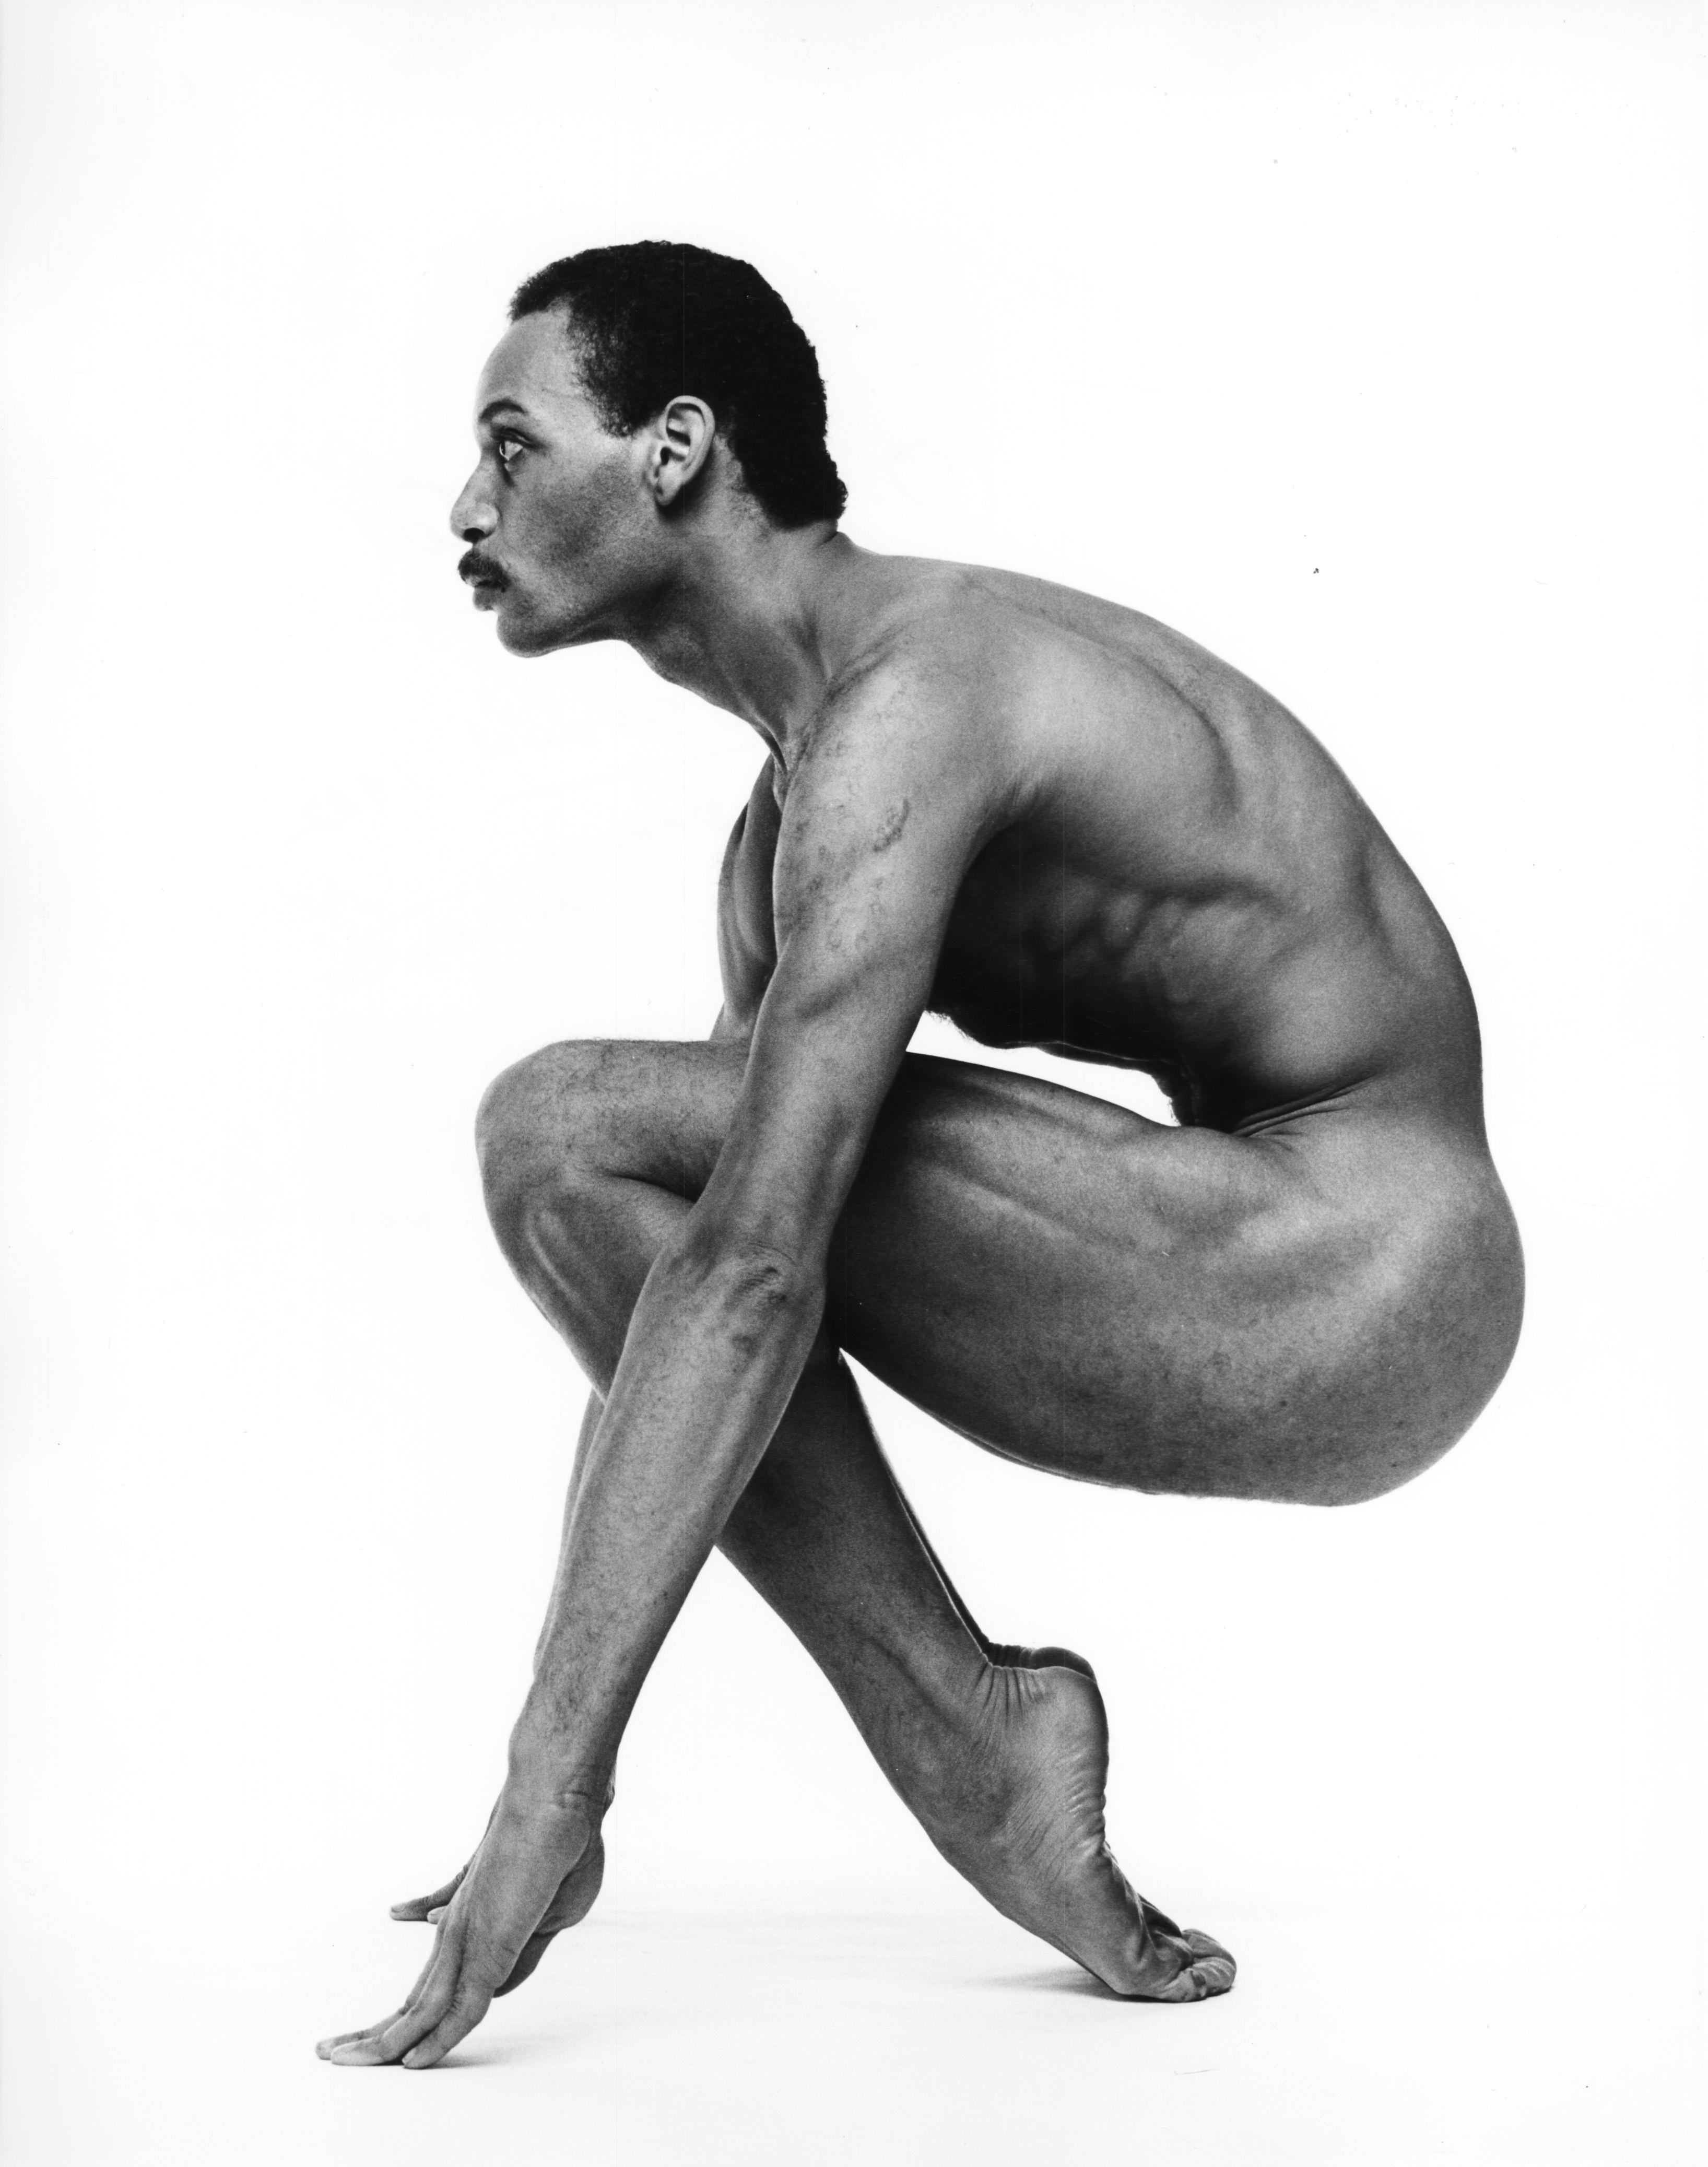 Der Tänzer Kevin Brown, nackt fotografiert für die Zeitschrift After Dark, signiert von Jack